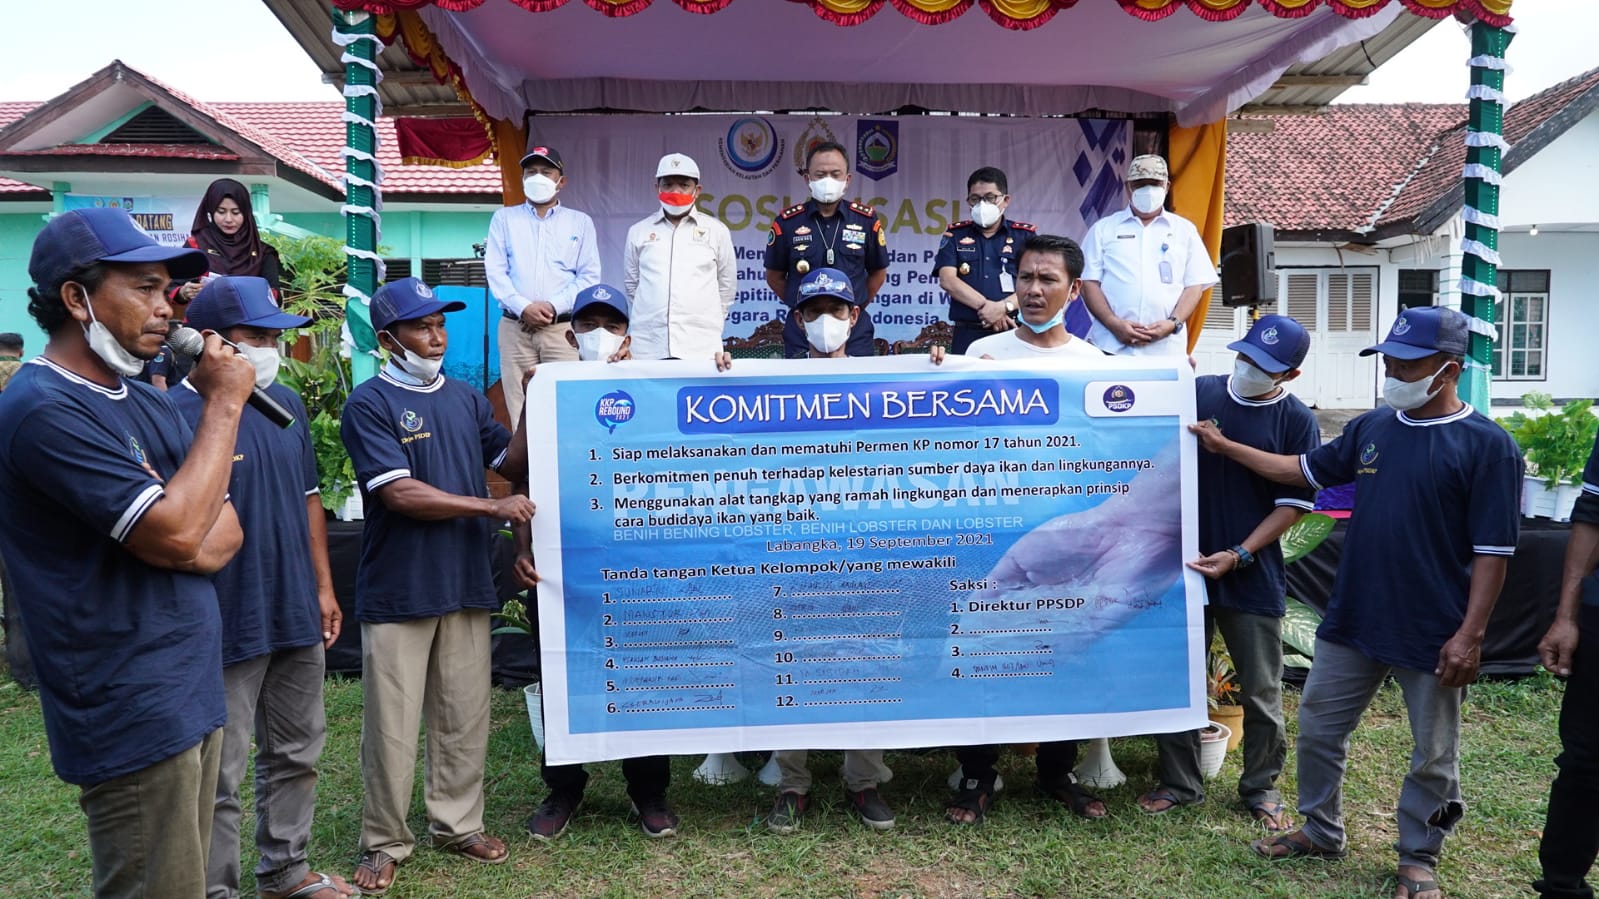 Nelayan NTB Dukung Penangkapan Lobster Berkelanjutan (18/09)